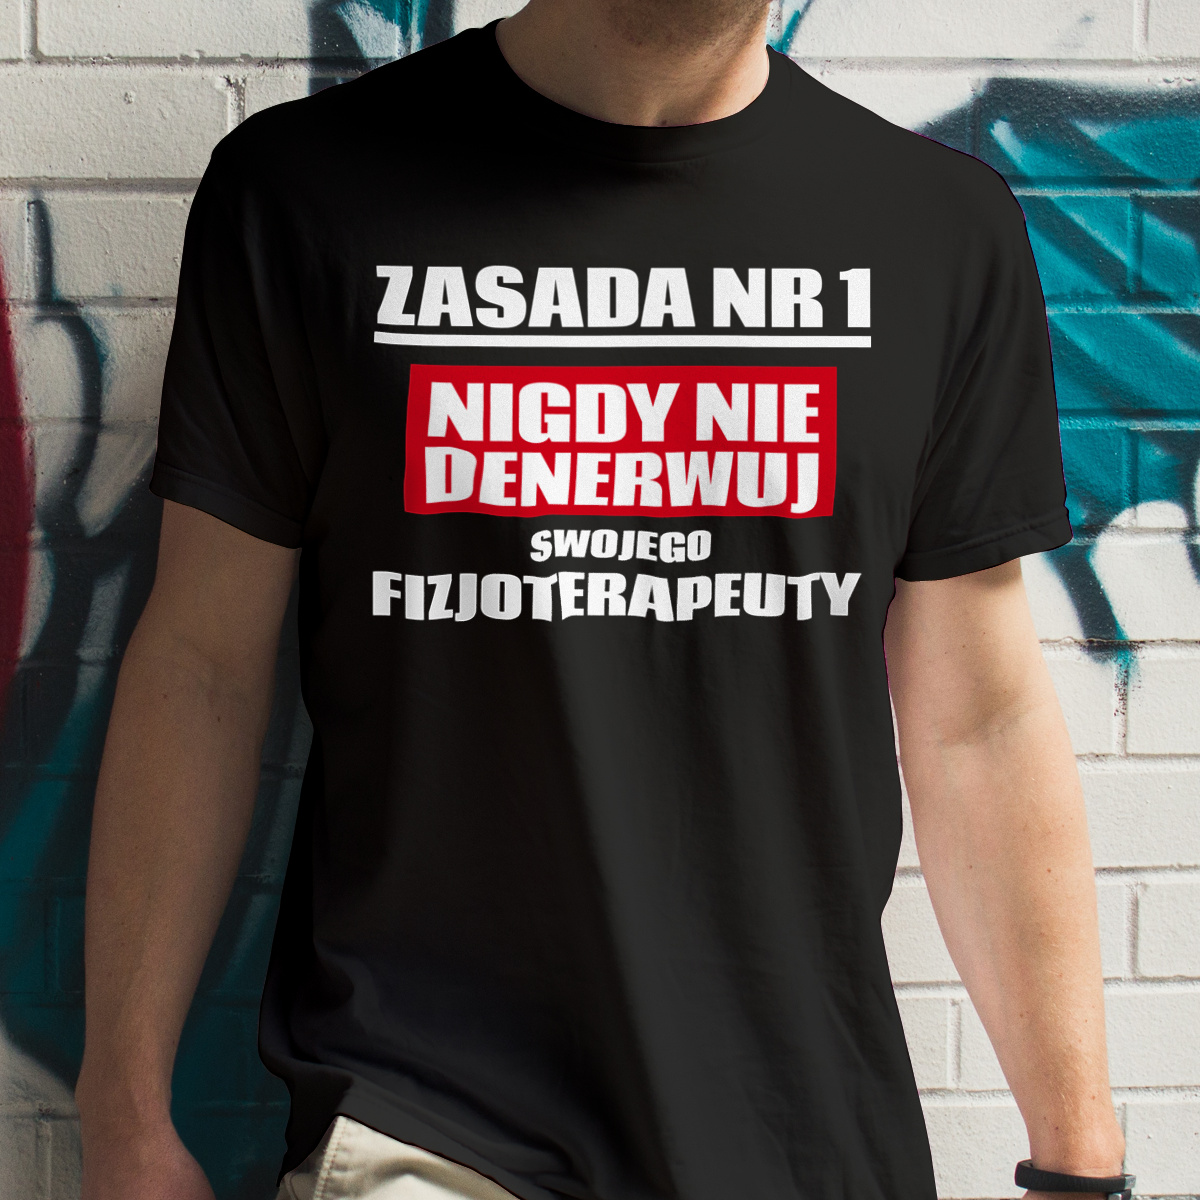 Zasada Nr 1 - Nigdy Nie Denerwuj Swojego Fizjoterapeuty - Męska Koszulka Czarna